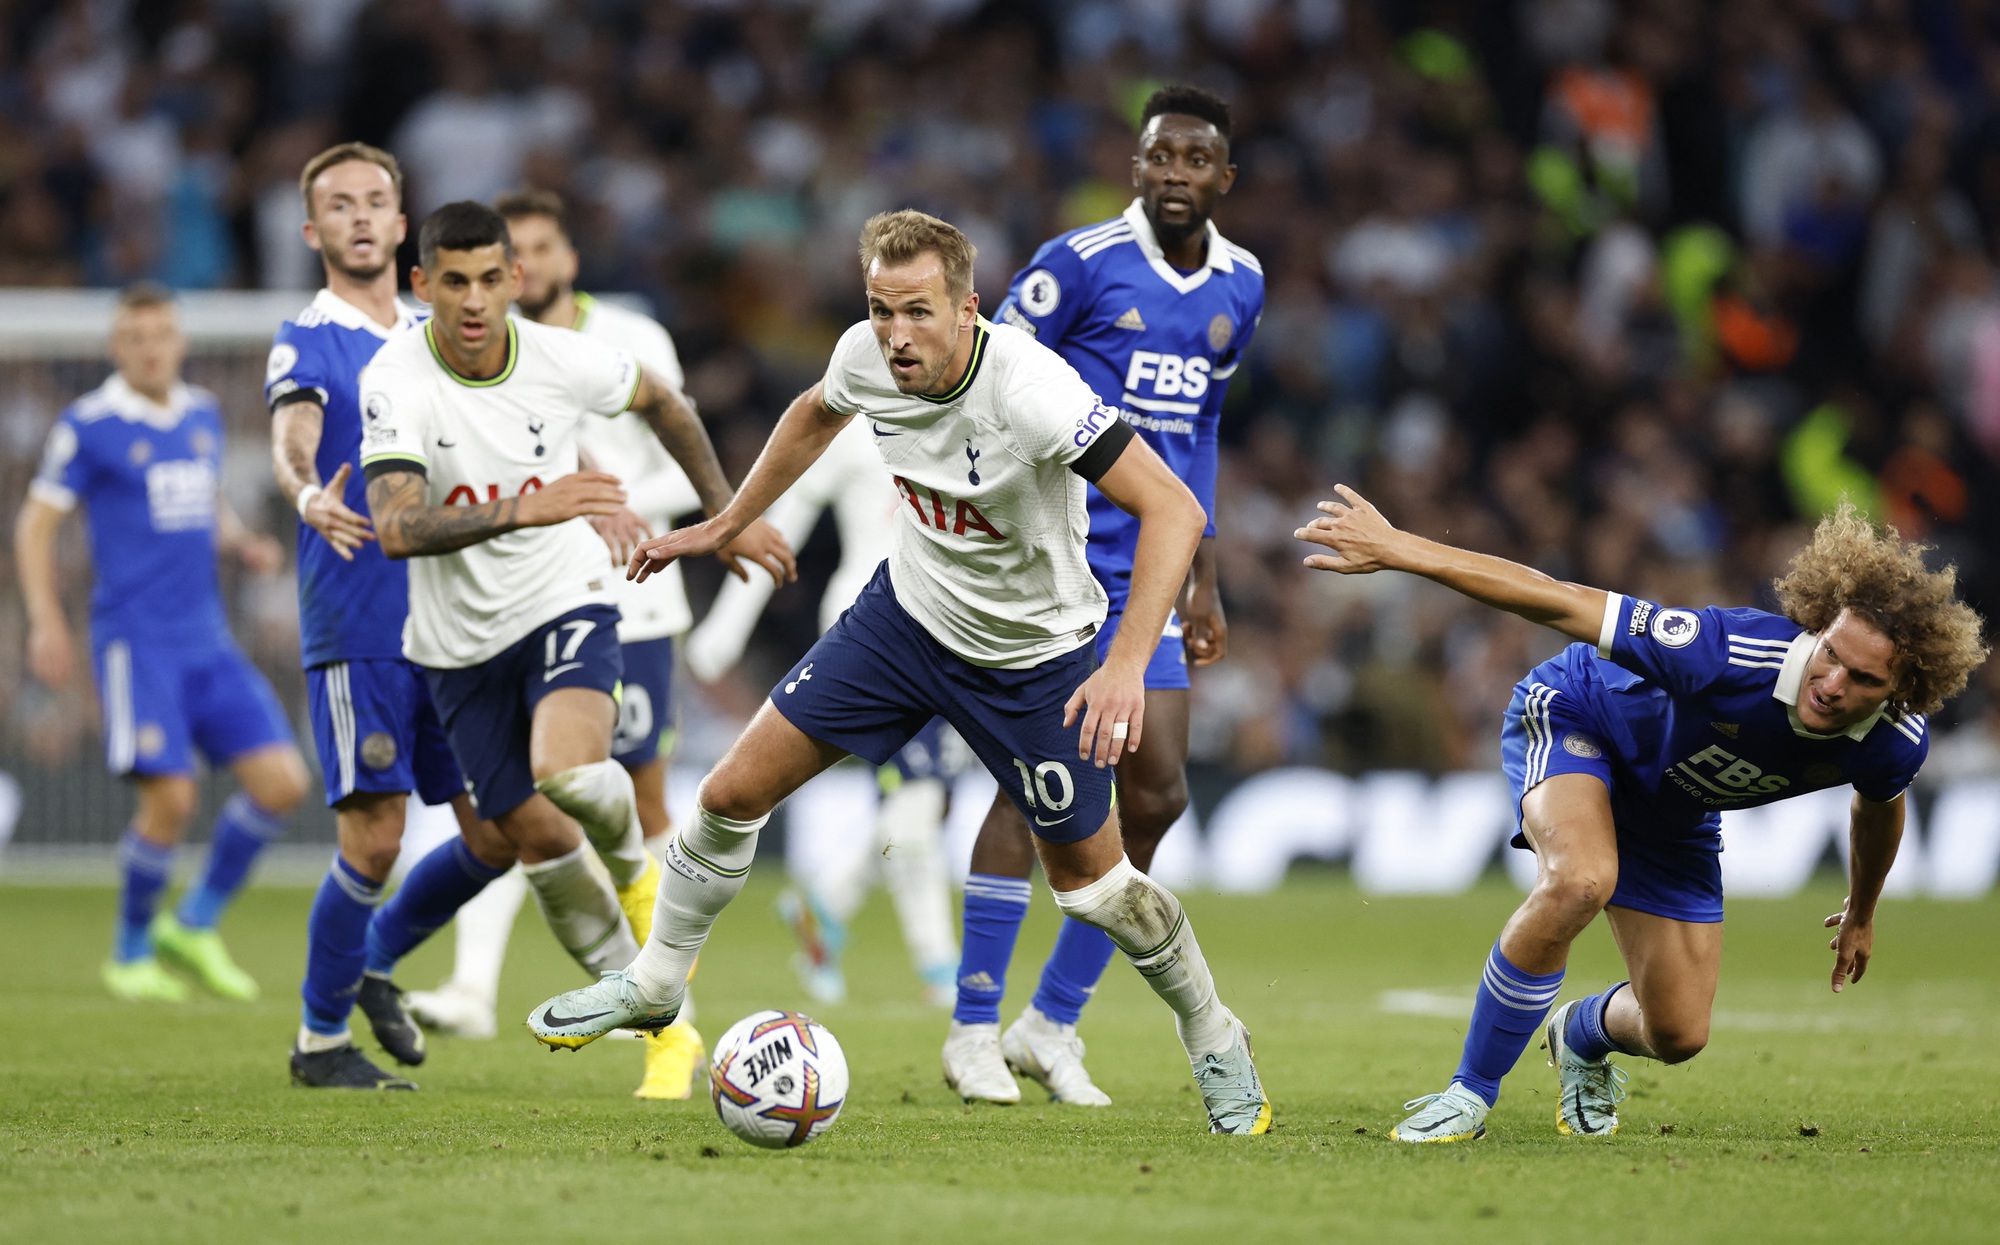 Siêu dự bị lập hat-trick 14 phút, Tottenham áp sát đỉnh bảng Ngoại hạng - Ảnh 2.